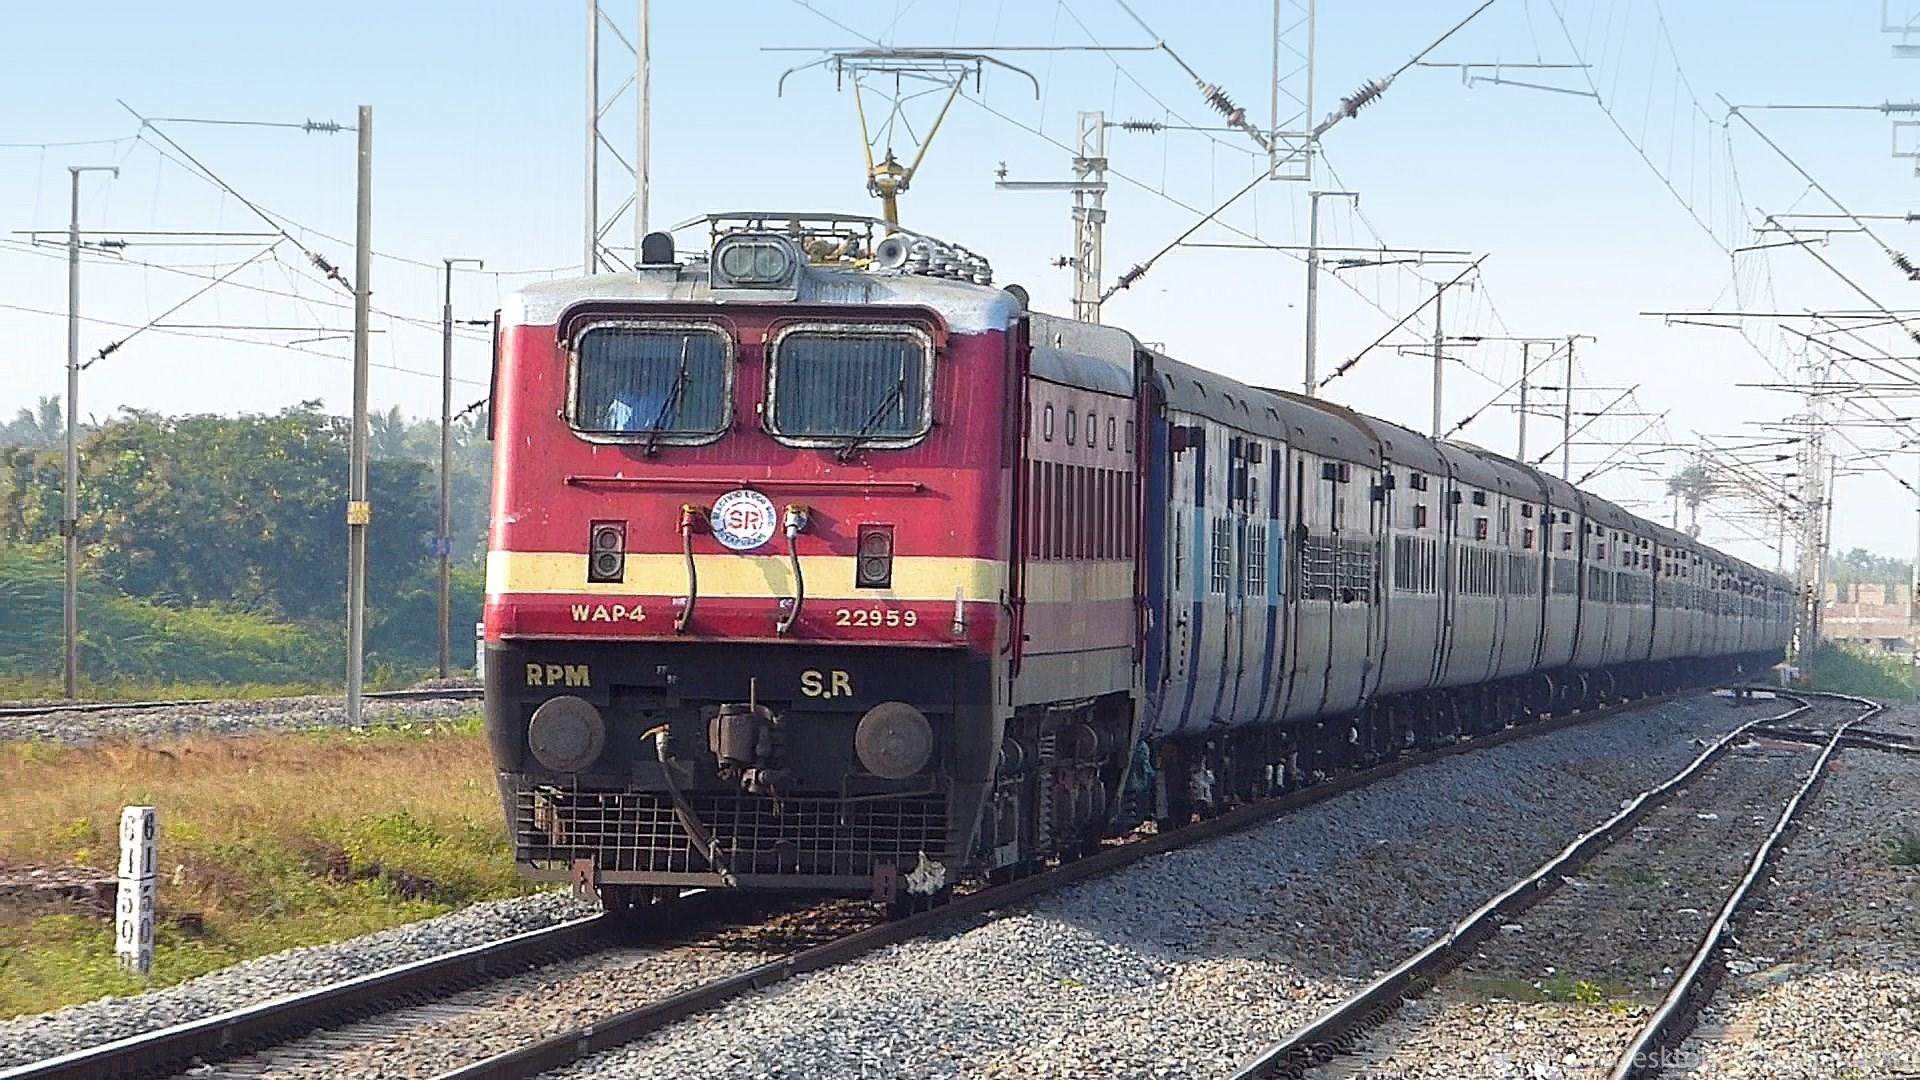 पूर्वोत्तर रेलवे, लखनऊ मंडल, ट्रेन निरस्त, 14673 जयनगर-अमृतसर शहीद एक्सप्रेस,12572 आनन्द विहार टर्मिनस-गोरखपुर हमसफर एक्सप्रेस, 02564 नई दिल्ली-सहरसा क्लोन स्पेशल ट्रेन, 02570 नई दिल्ली-दरभंगा क्लोन स्पेशल ट्रेन,12558 आनंद विहार टर्मिनस-मुजफ्फरपुर एक्सप्रेस, North Eastern Railway, Lucknow Division, Train Canceled, 14673 Jaynagar – Amritsar Shaheed Express, 12572 Anand Vihar Terminus – Gorakhpur Humsafar Express, 02564 New Delhi – Saharsa Clone Special Train, 02570 New Delhi – Darbhanga Clone Special Train, 12558 Anand Vihar Terminus – Muzaffarpur Express